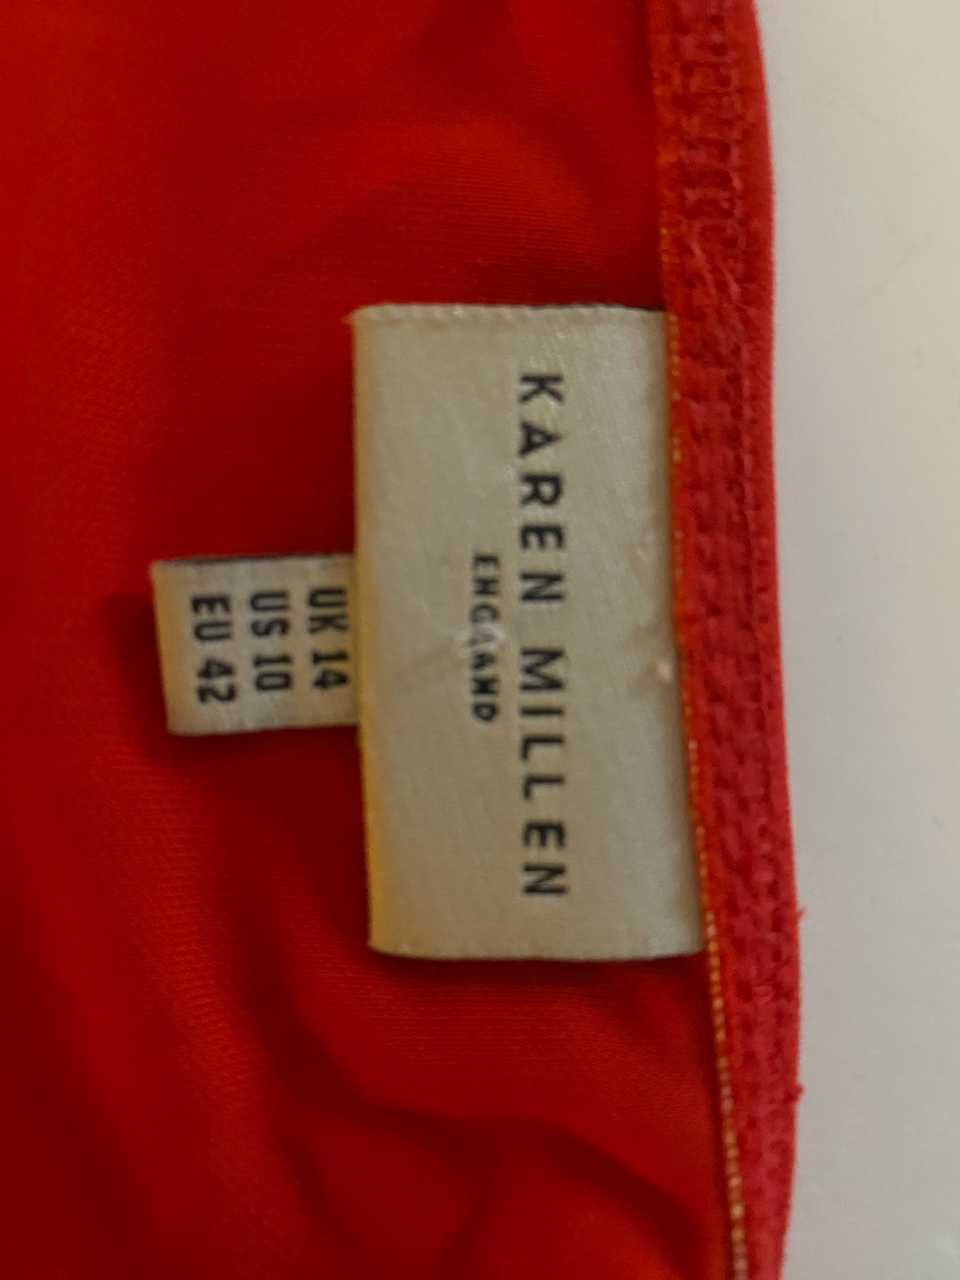 Red Karen Millen Summer Dress Size 14 Vivienne Austin